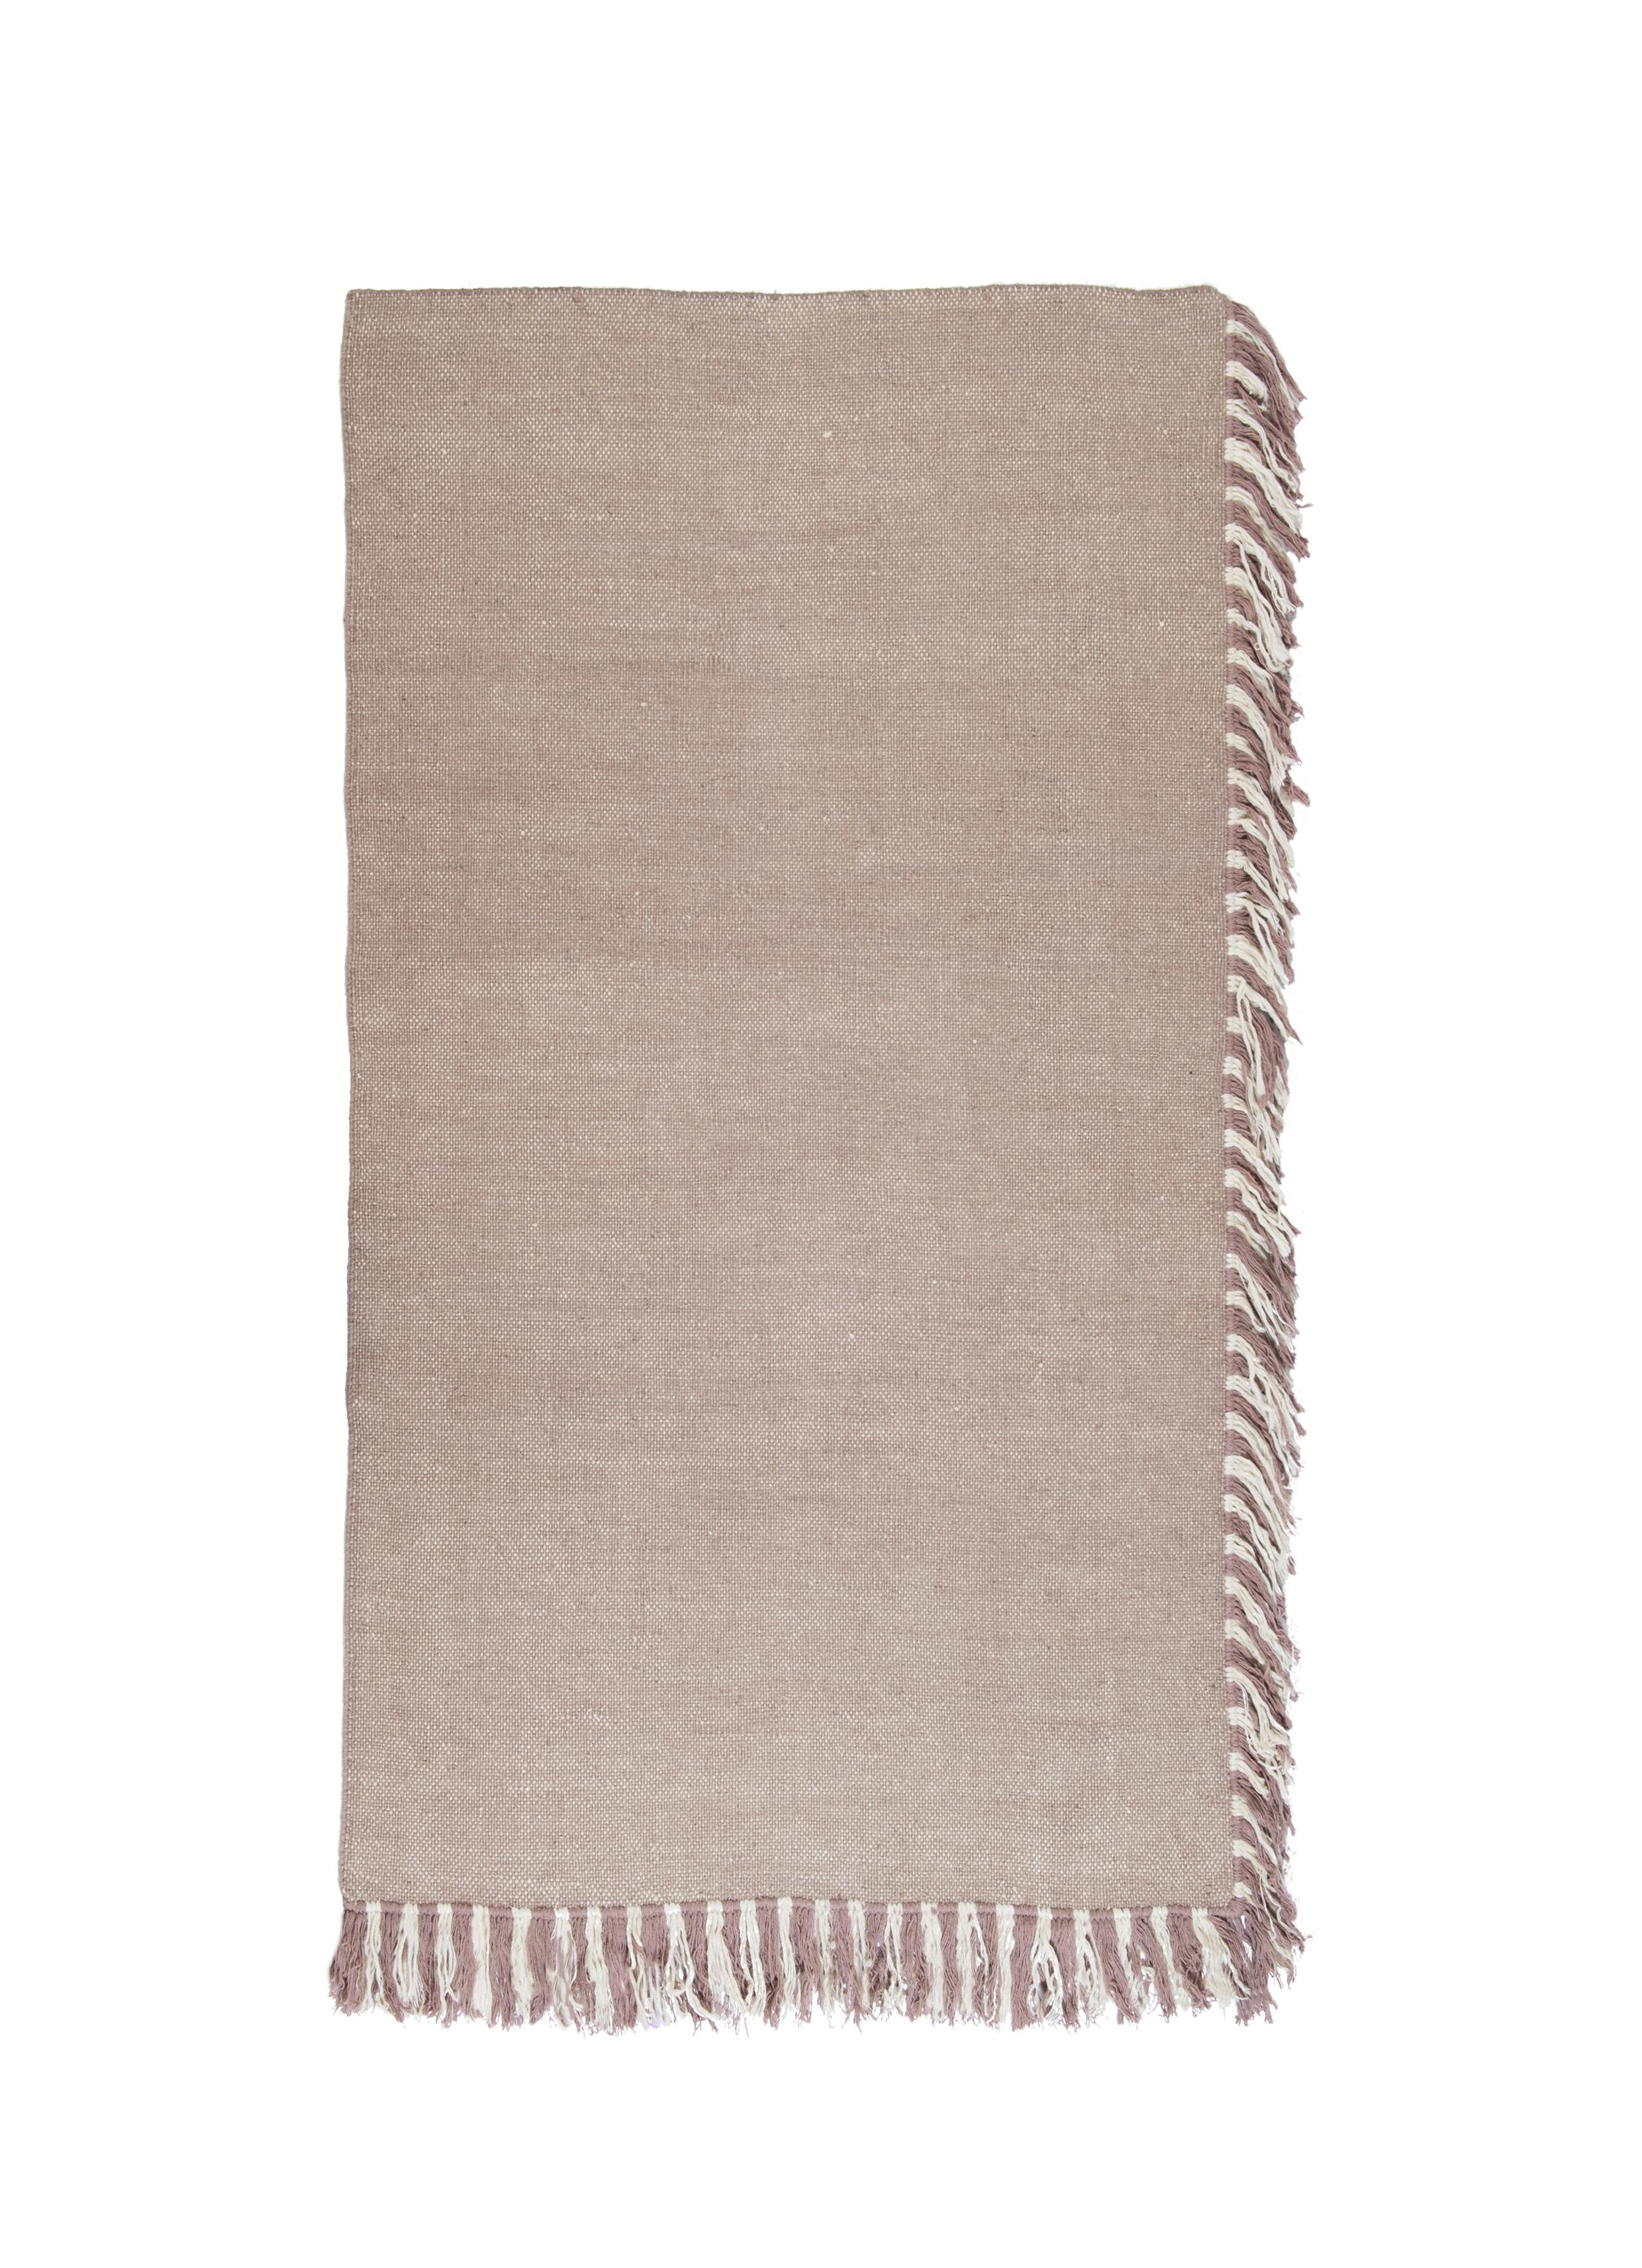 Nr.265 Freeplay Handgeknüpfter Teppich von Lyk Carpet
Abmessungen: B 120 x L 210 cm.
MATERIALIEN: 100% tibetische Hochlandwolle, handgekämmte und handgesponnene Schurwolle, natürliche pflanzengefärbte Wolle, 100 Knoten pro Quadratzoll